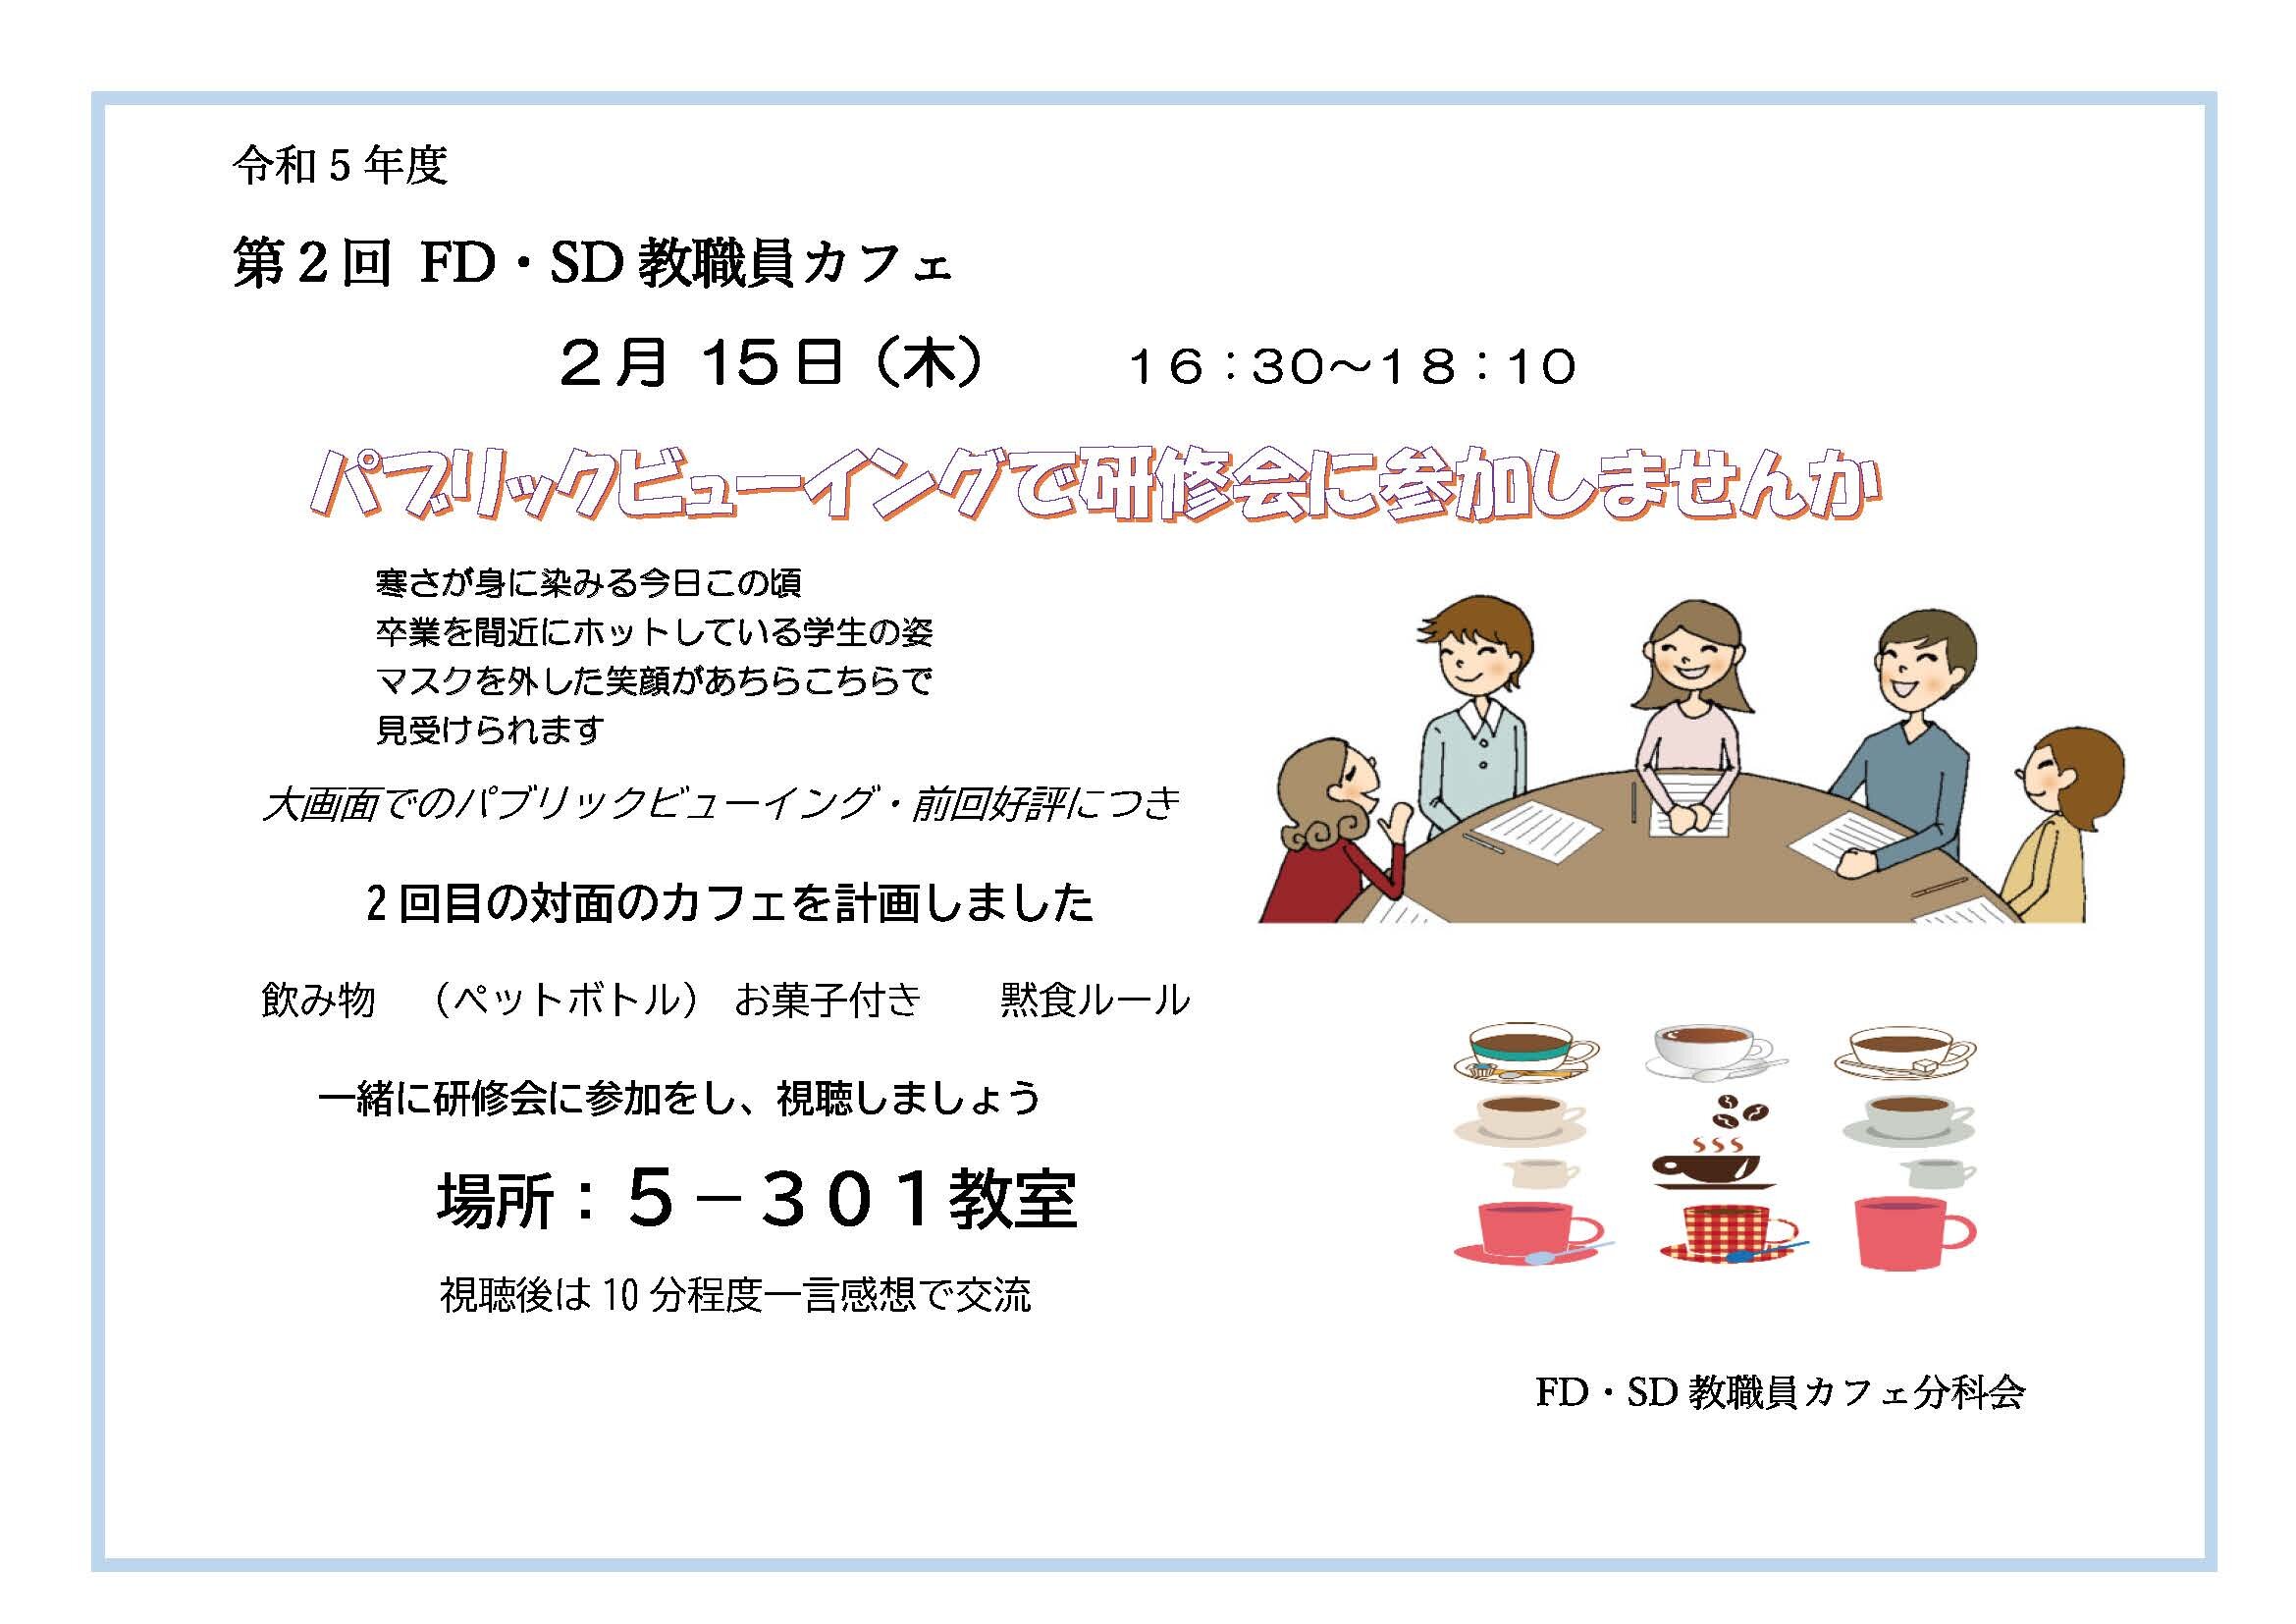 2月15日に第2回FD・SD教職員カフェを開催しました。